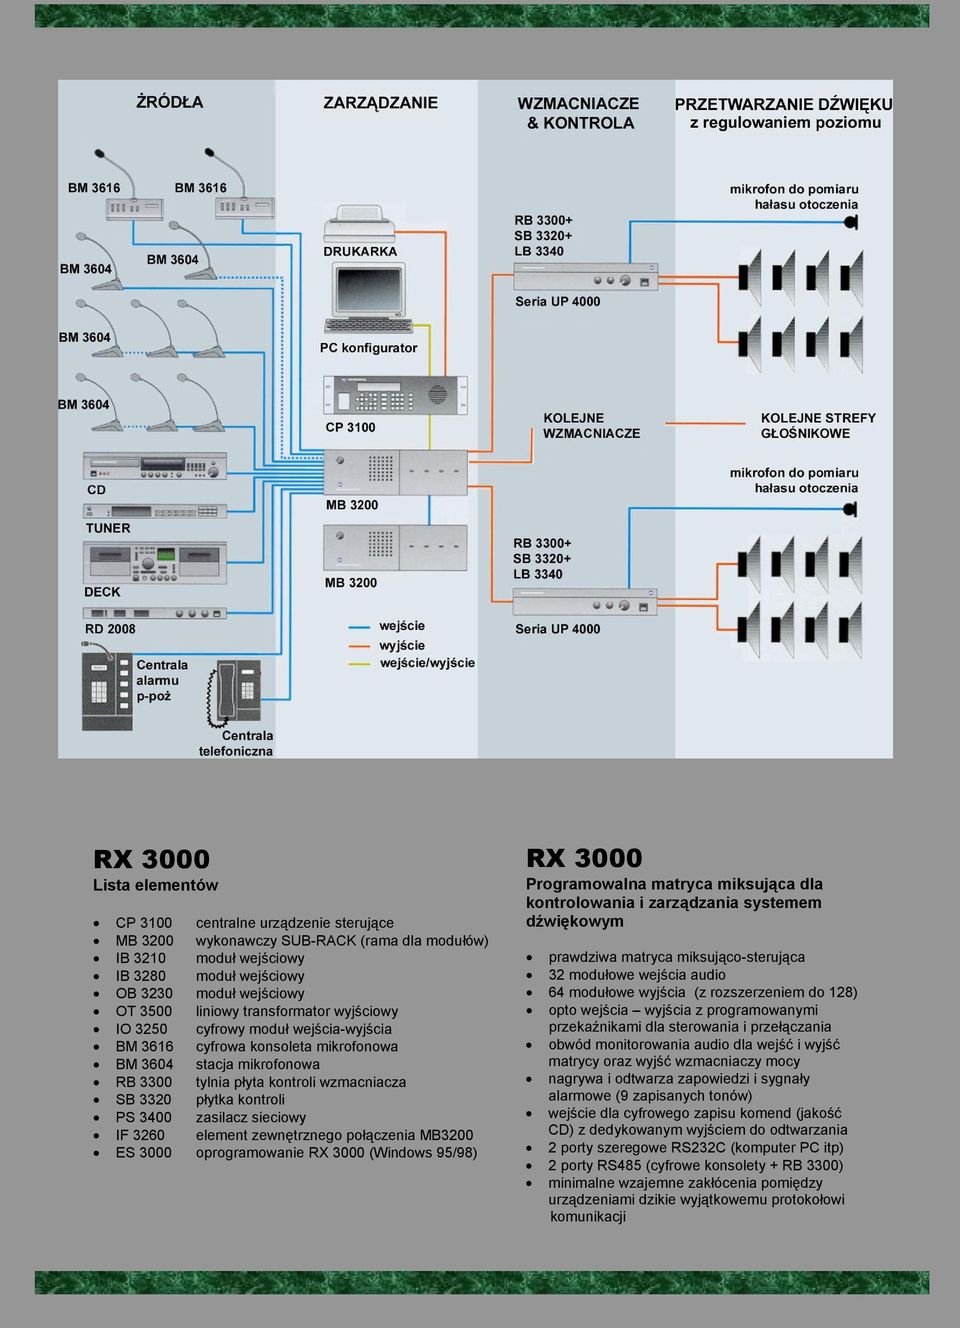 3400 zasilacz sieciowy IF 3260 element zewnętrznego połączenia MB3200 ES 3000 oprogramowanie RX 3000 (Windows 95/98) RX 3000 Programowalna matryca miksująca dla kontrolowania i zarządzania systemem